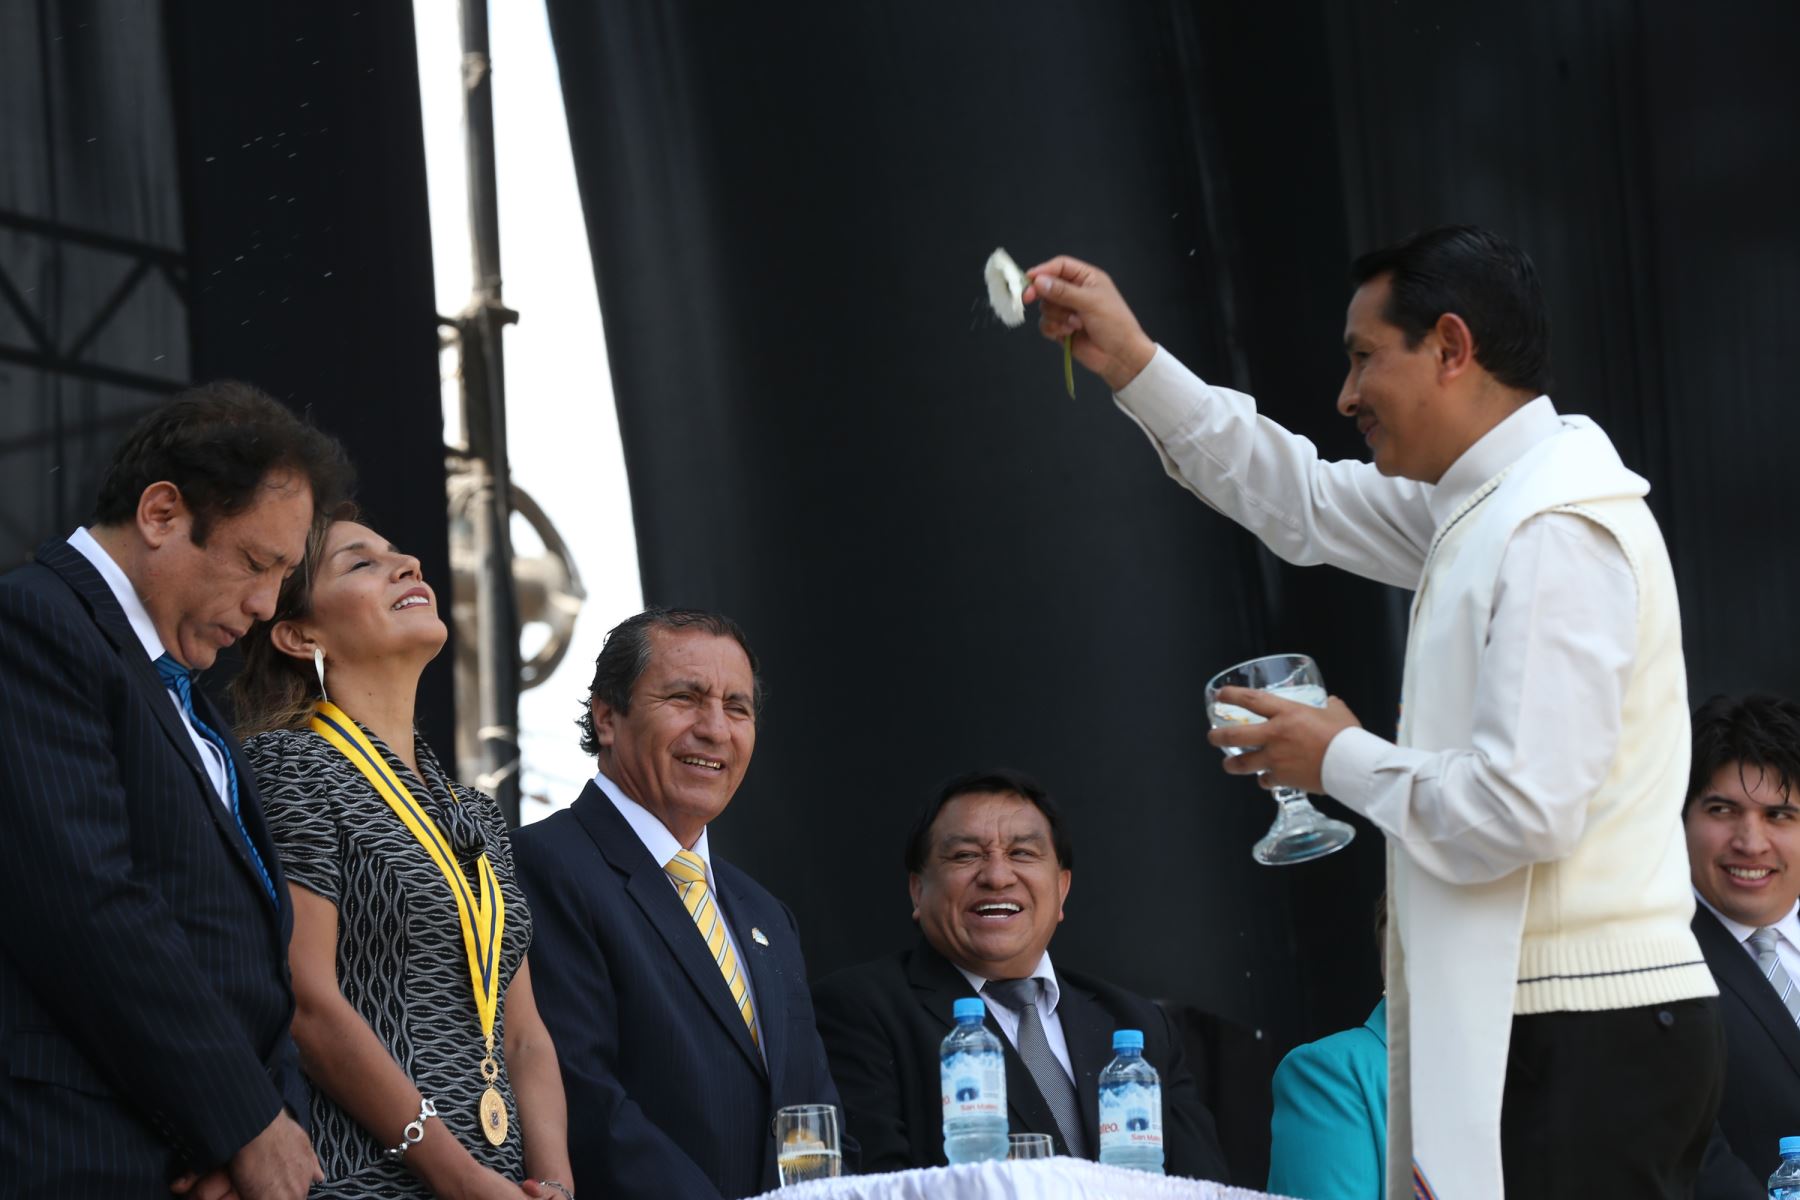 Alcalde de Ate, Oscar Benavides, y teniente alcaldesa de Lima, Patricia Juárez, reciben la bendición en ceremonia de juramentación del primero. ANDINA/Norman Córdova